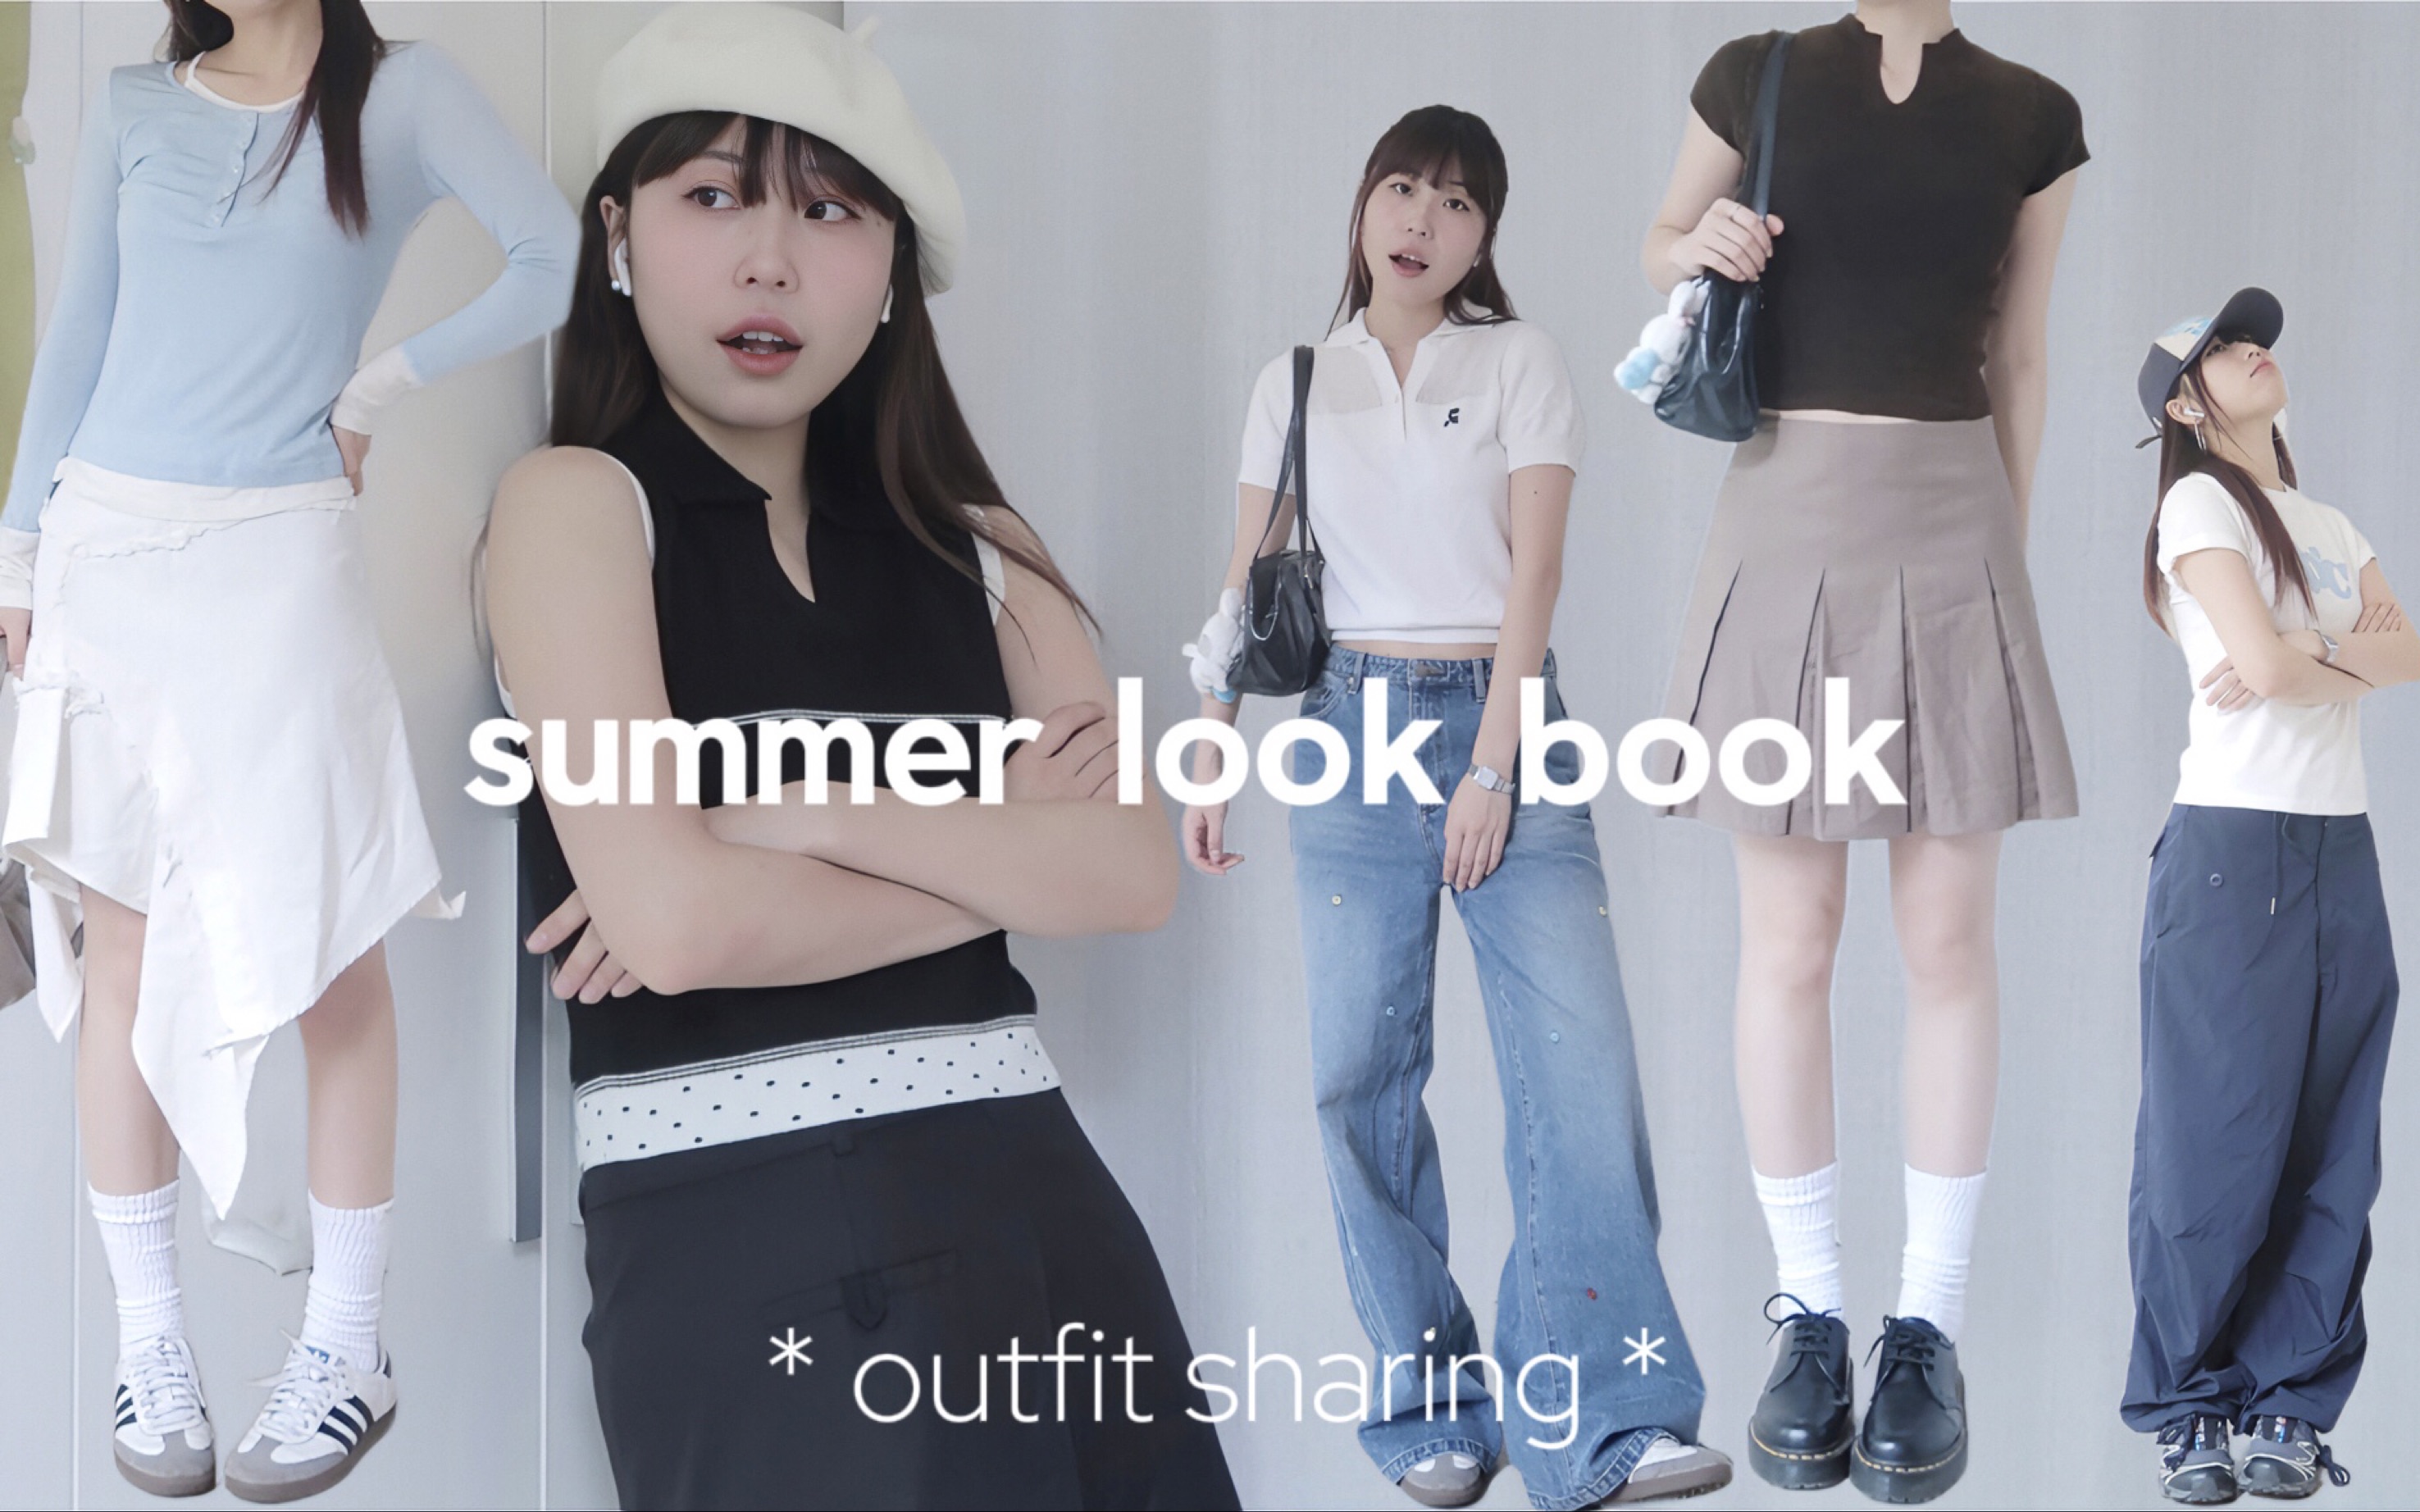 Look book | 又来分享新衣服啦！夏季穿搭分享！简单不马虎清爽不乏味！